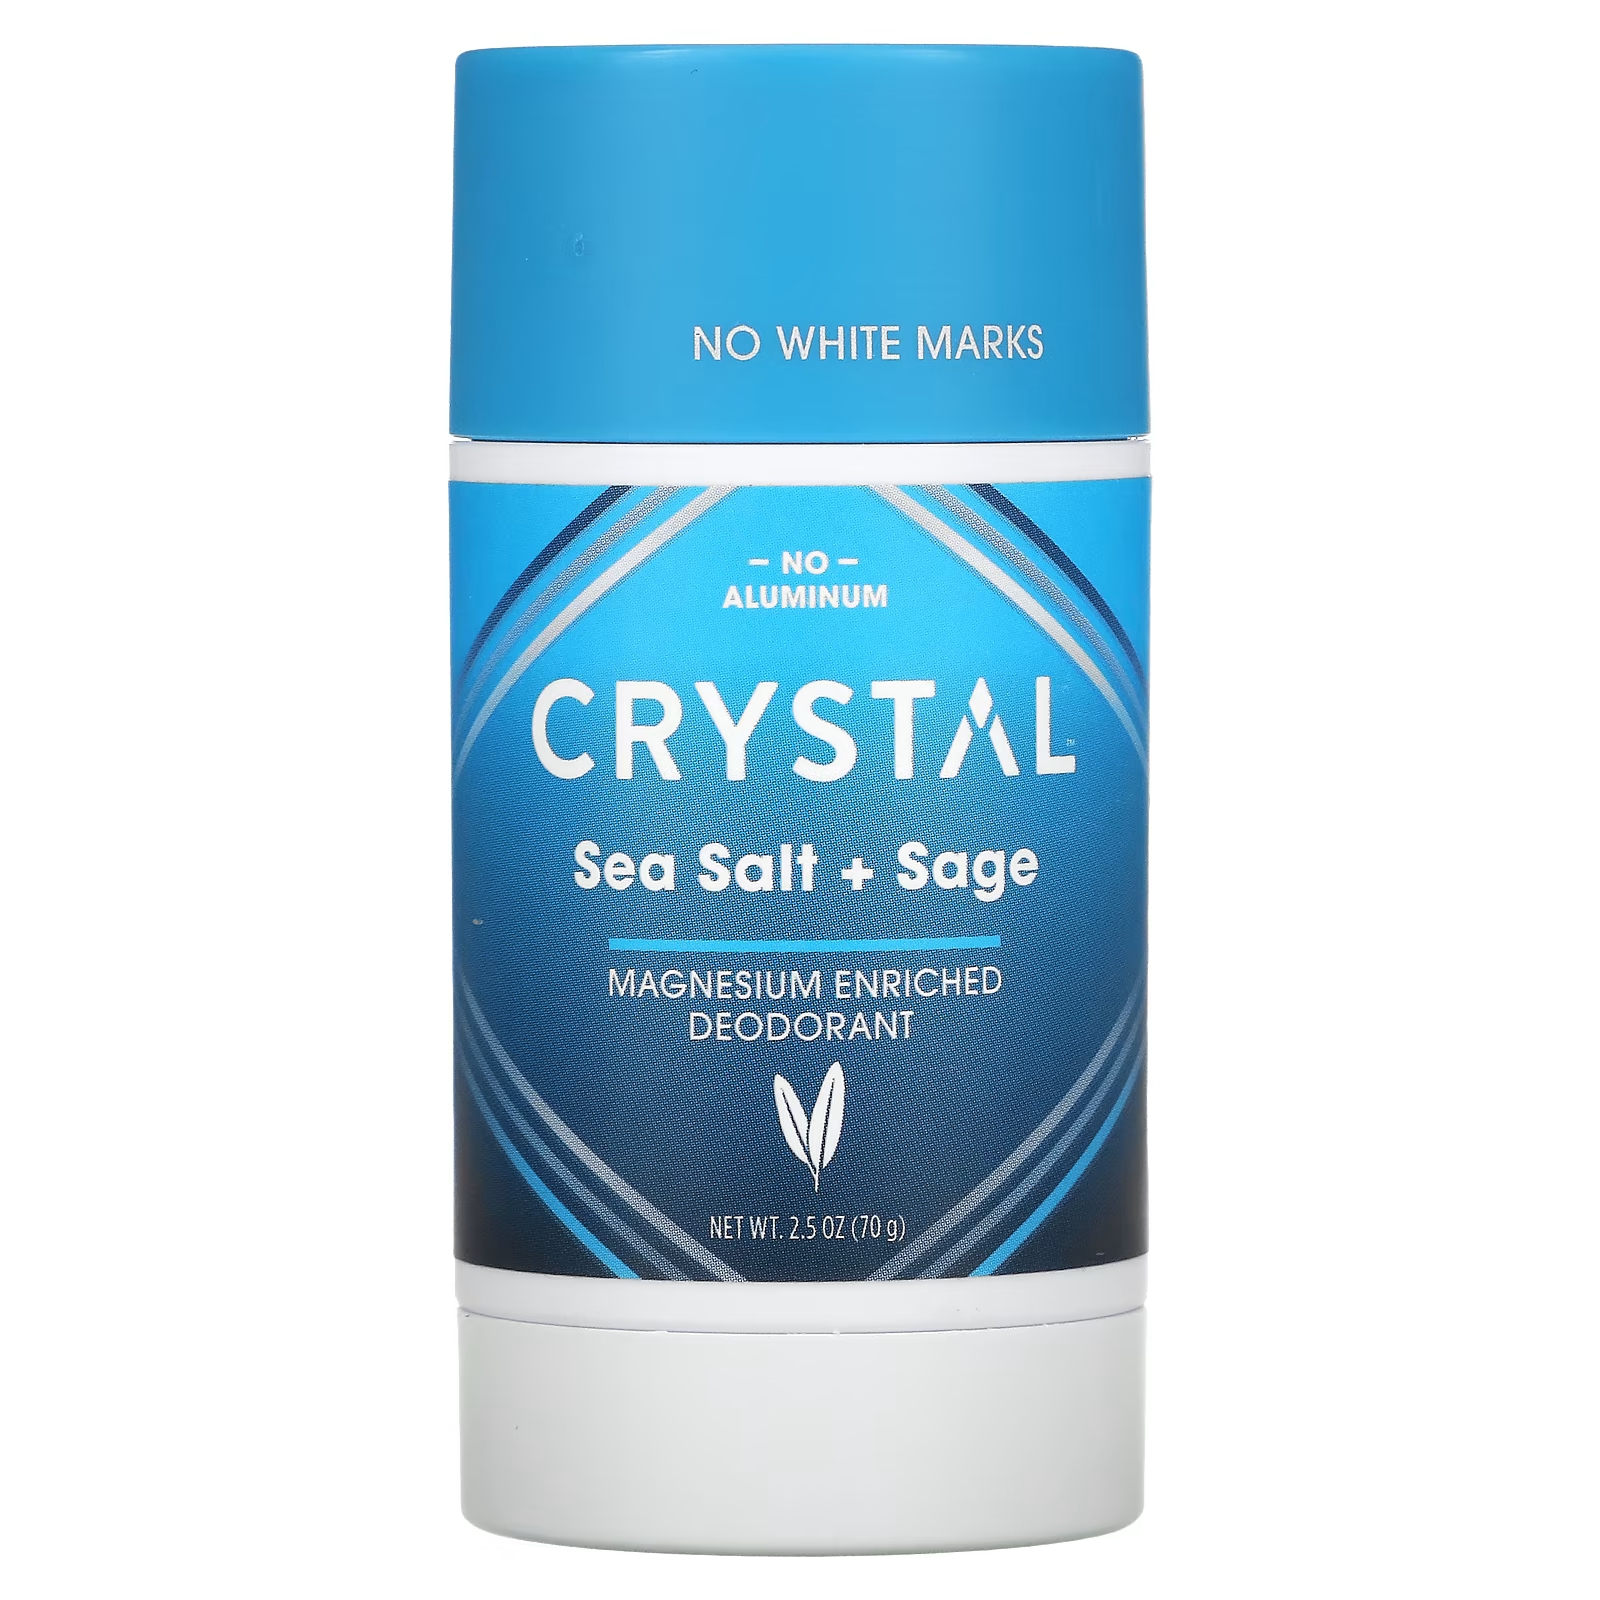 Дезодорант Crystal обогащенный магнием, морская соль + шалфей crystal обогащенный магнием дезодорант легкий и мягкий 70 г 2 5 унции